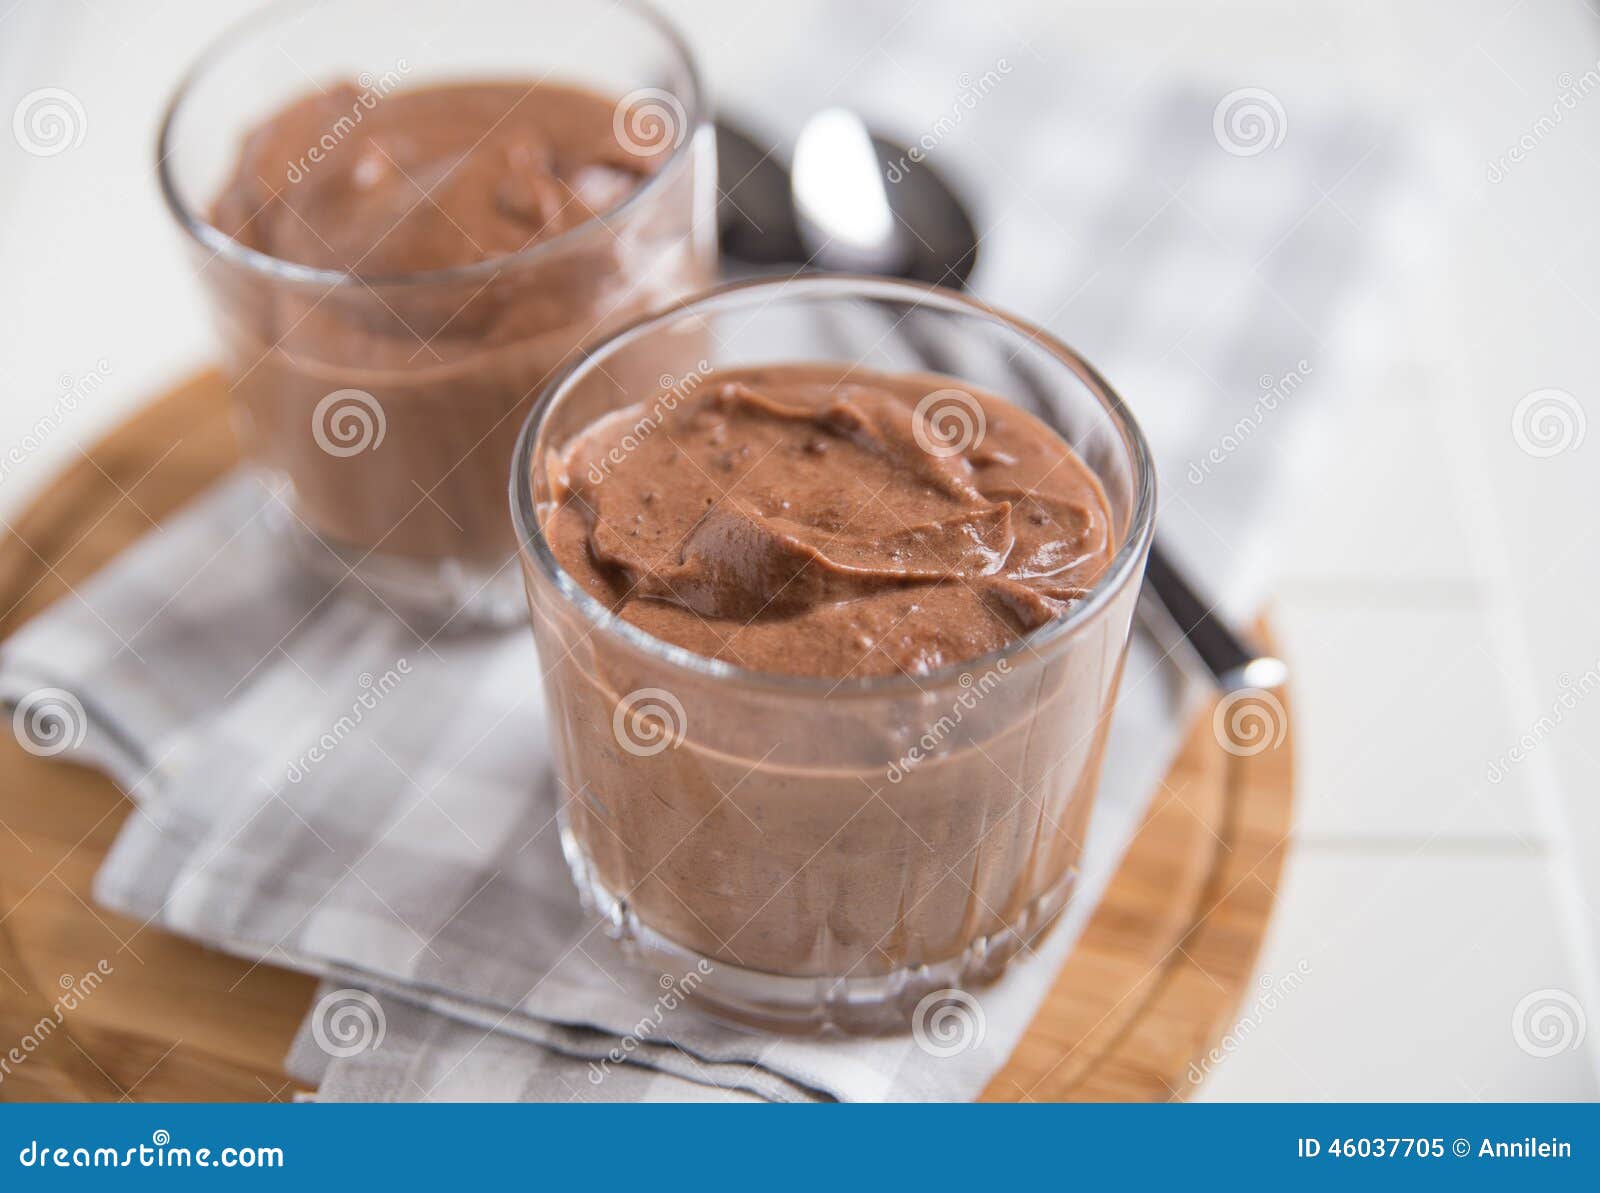 Schokoladencreme stockbild. Bild von französisch, nahrung - 46037705